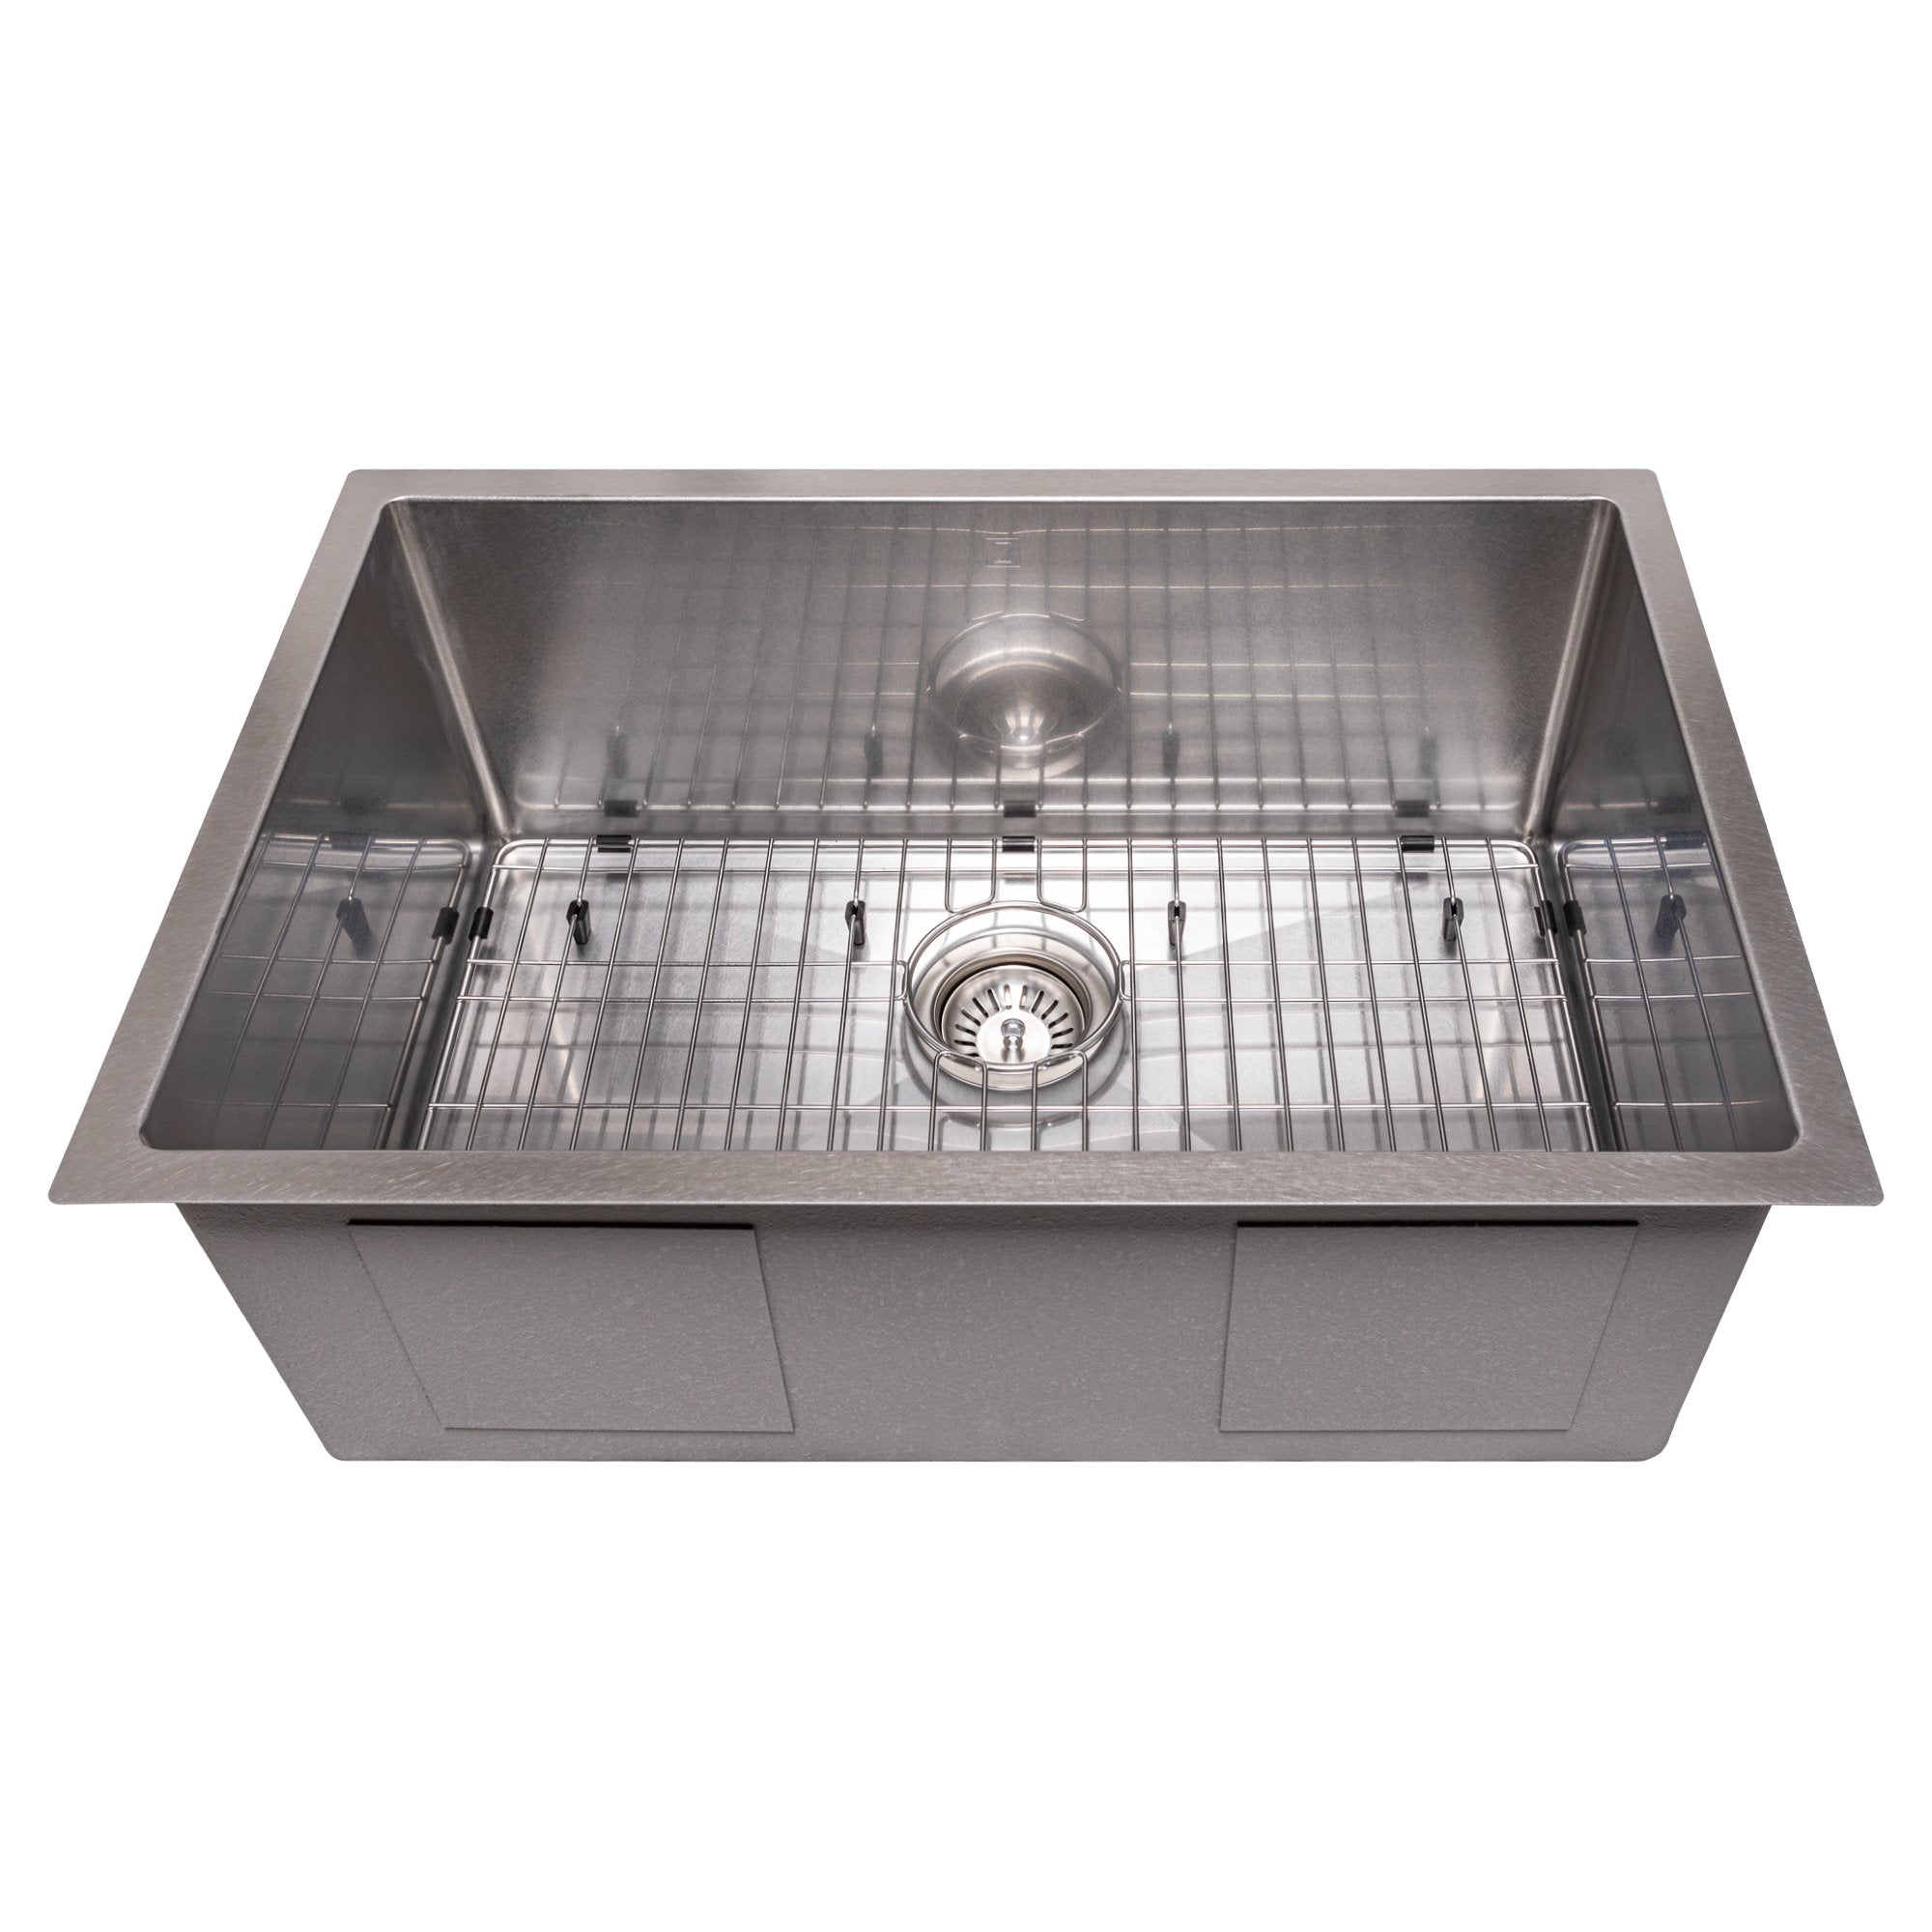 ZLINE 27" Meribel Undermount Single Bowl Stainless Steel Kitchen Sink with Bottom Grid (SRS-27)